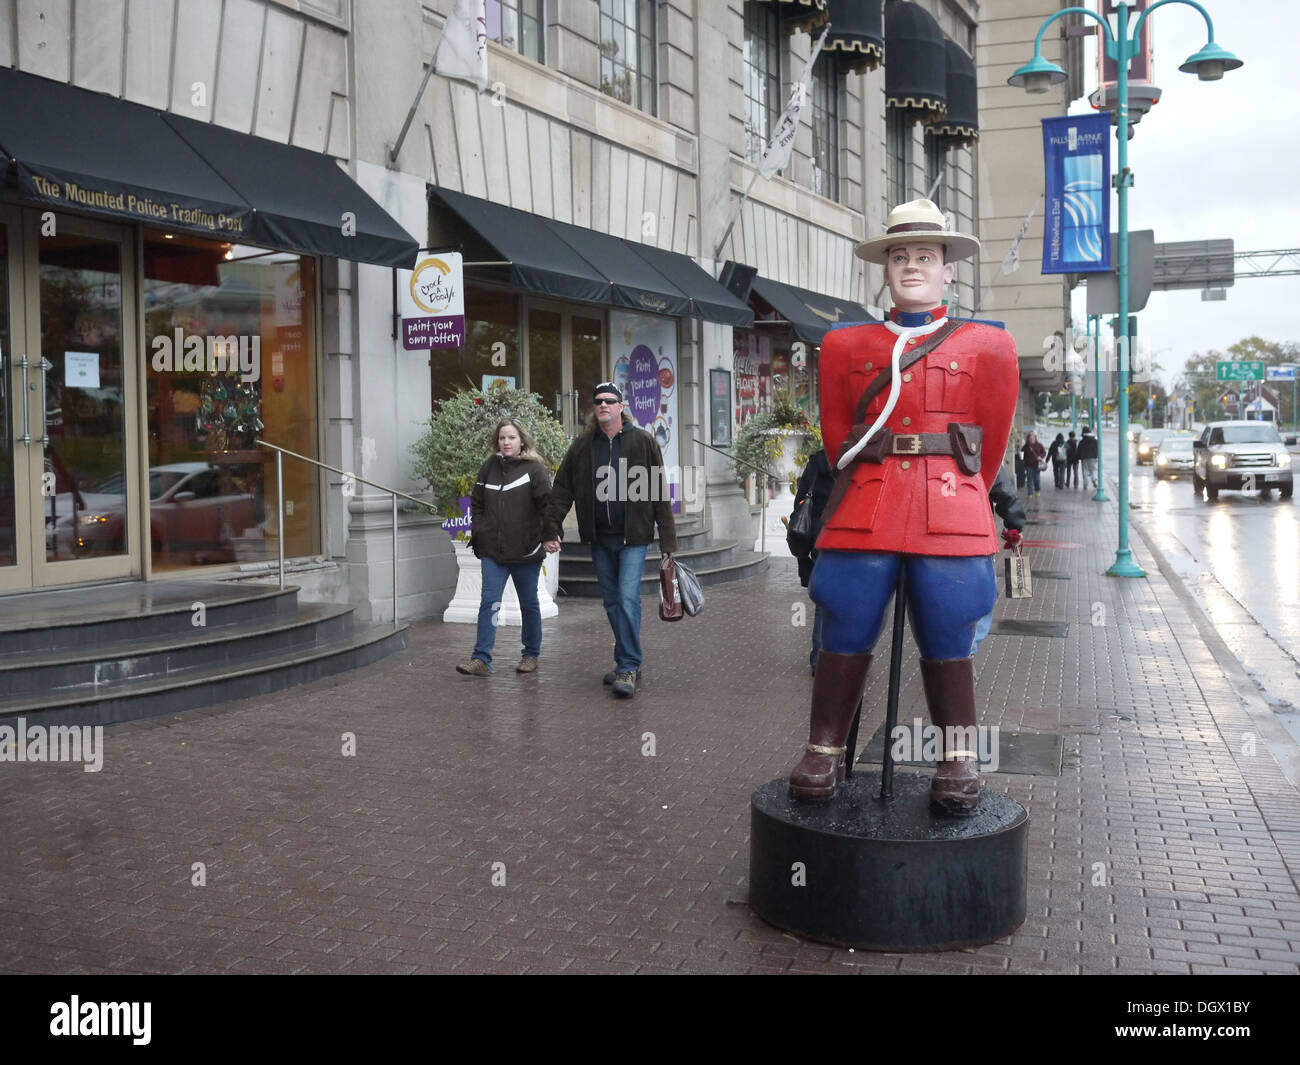 La police montée canadienne statue Banque D'Images